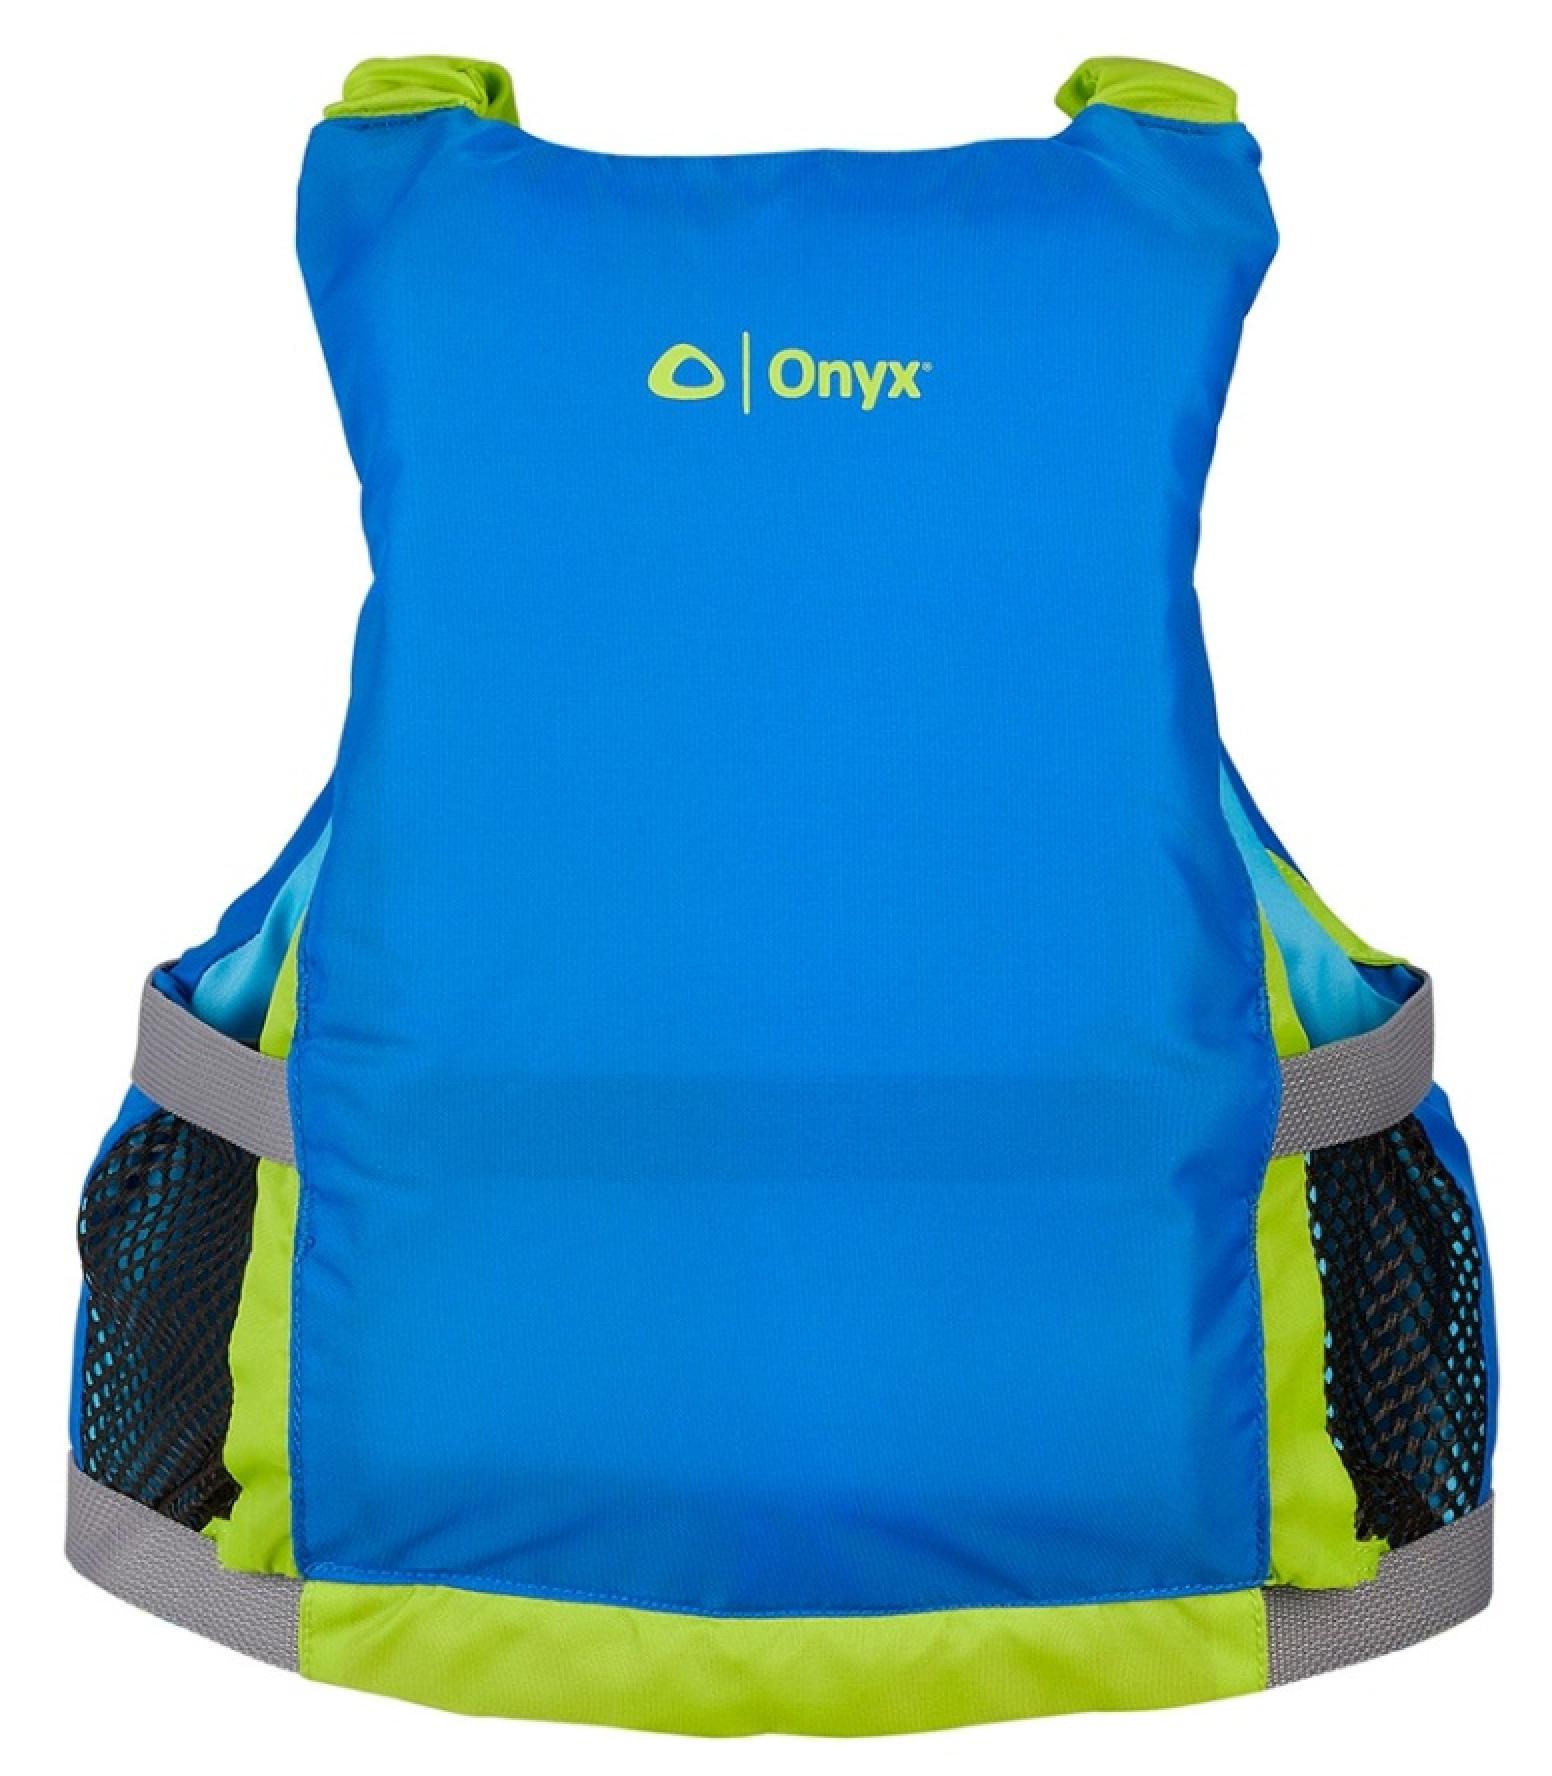 Onyx Youth Paddle Vest